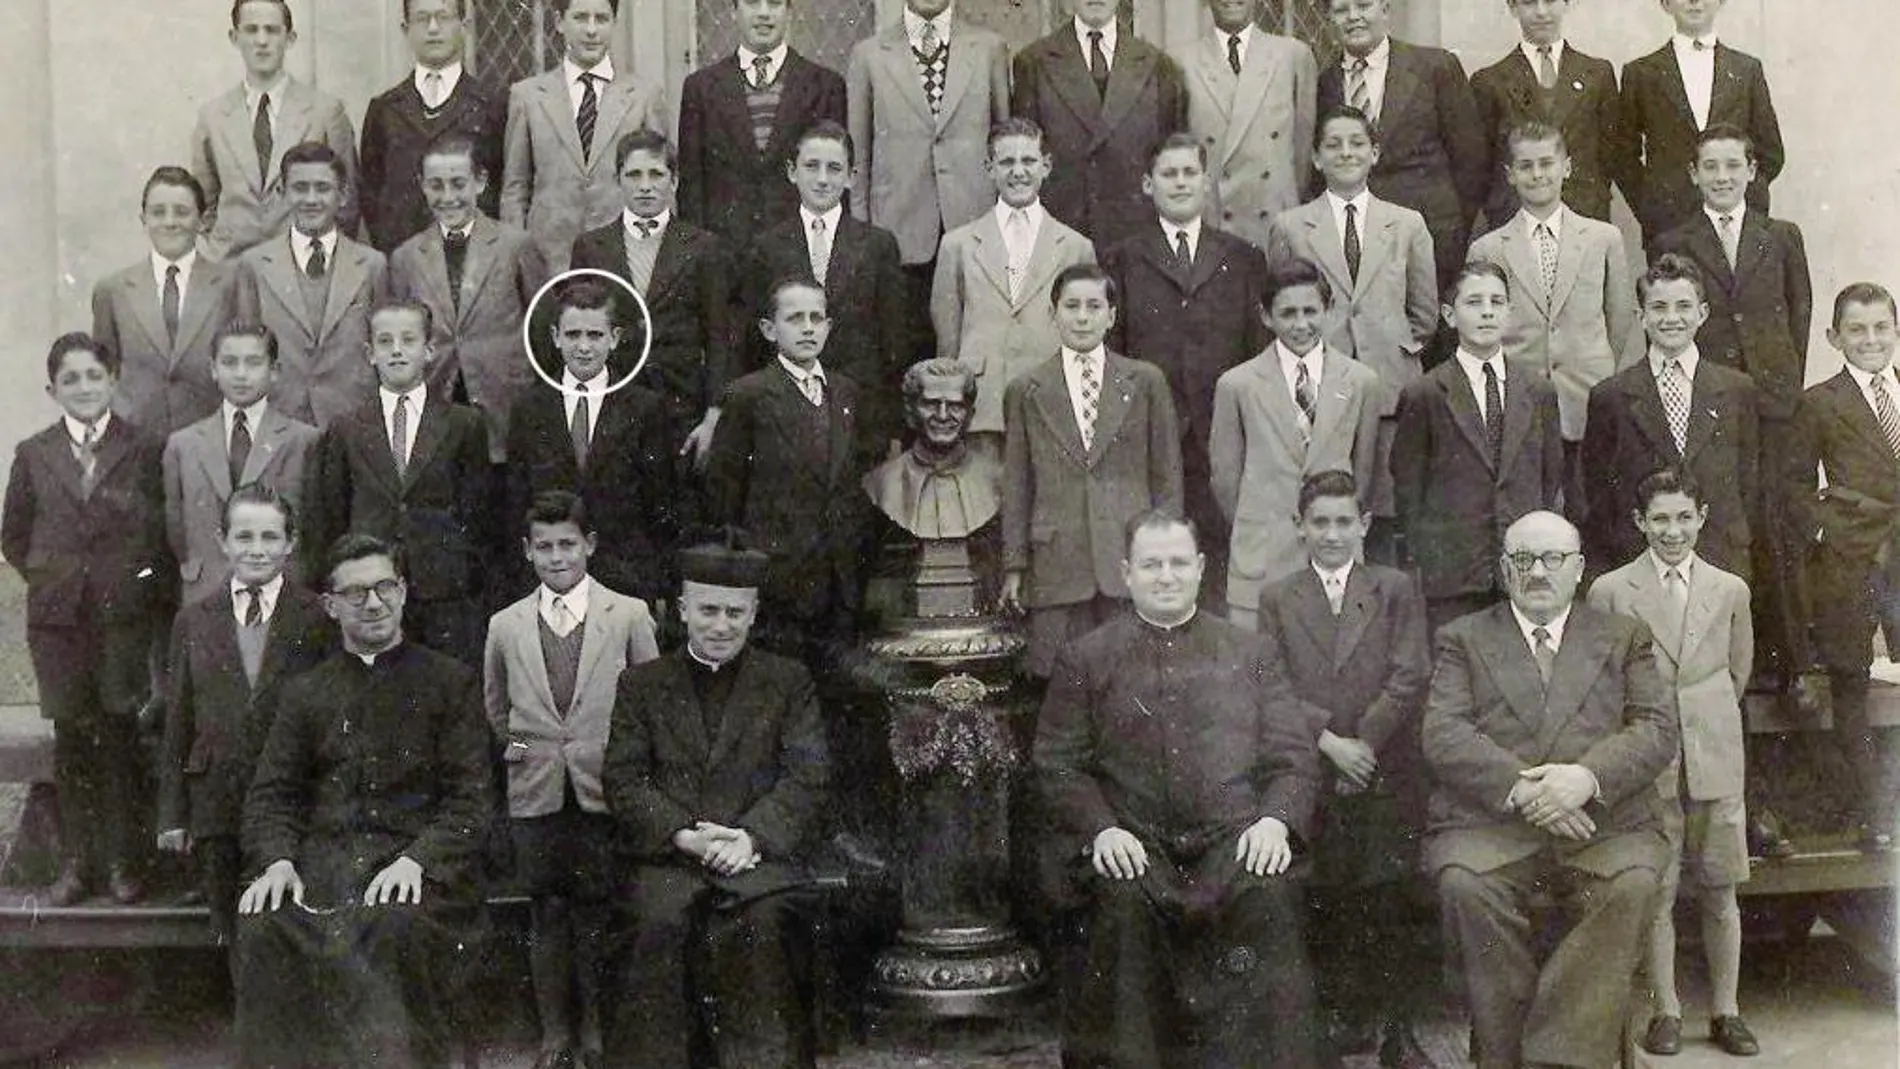 FRANCISCO fue alumno en el Colegio Wilfrid Barón de los Santos Ángeles, en Ramos Mejía. Esta imagen data de 1949.